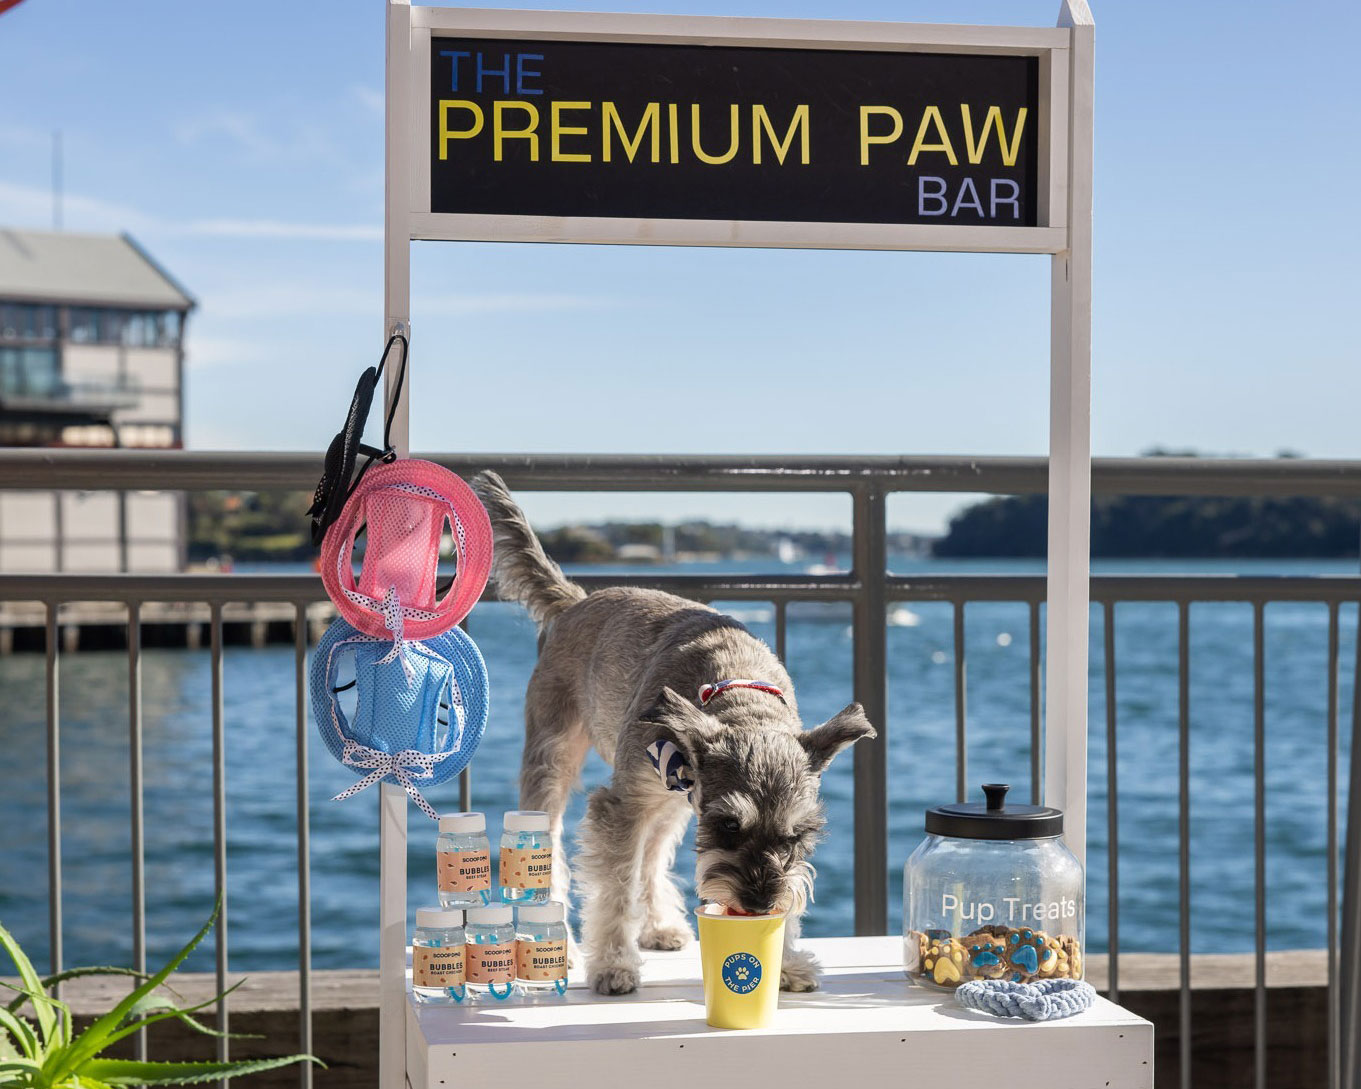 A dog on a pop-up bar at Pier One, one of the best pet friendly hotels in Sydney